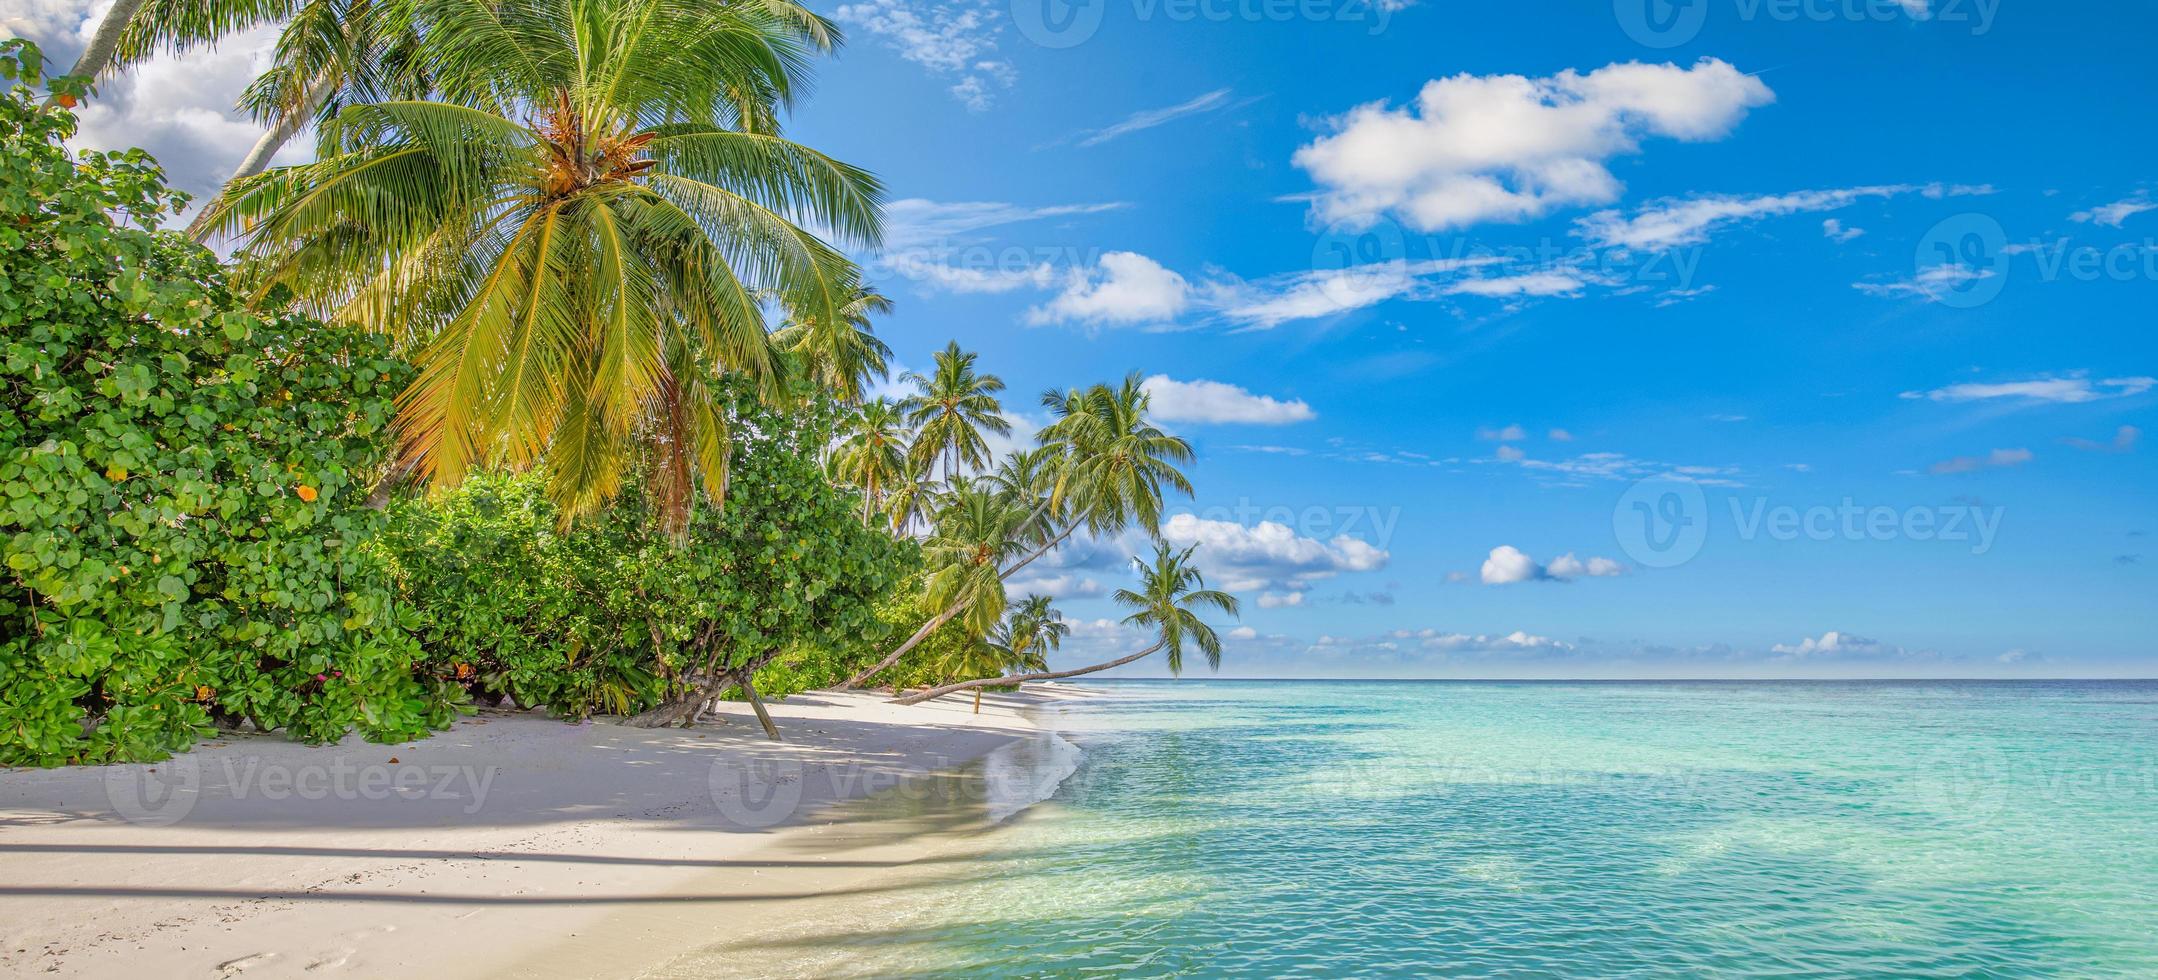 Sommerreisehintergrund. exotische tropische strandinsel, paradiesische küste. Palmen, weißer Sand, erstaunlicher Himmel, Ozean, Lagune. fantastisch schönes Naturpanorama, sonniger Tag idyllischer inspirierender Urlaub foto